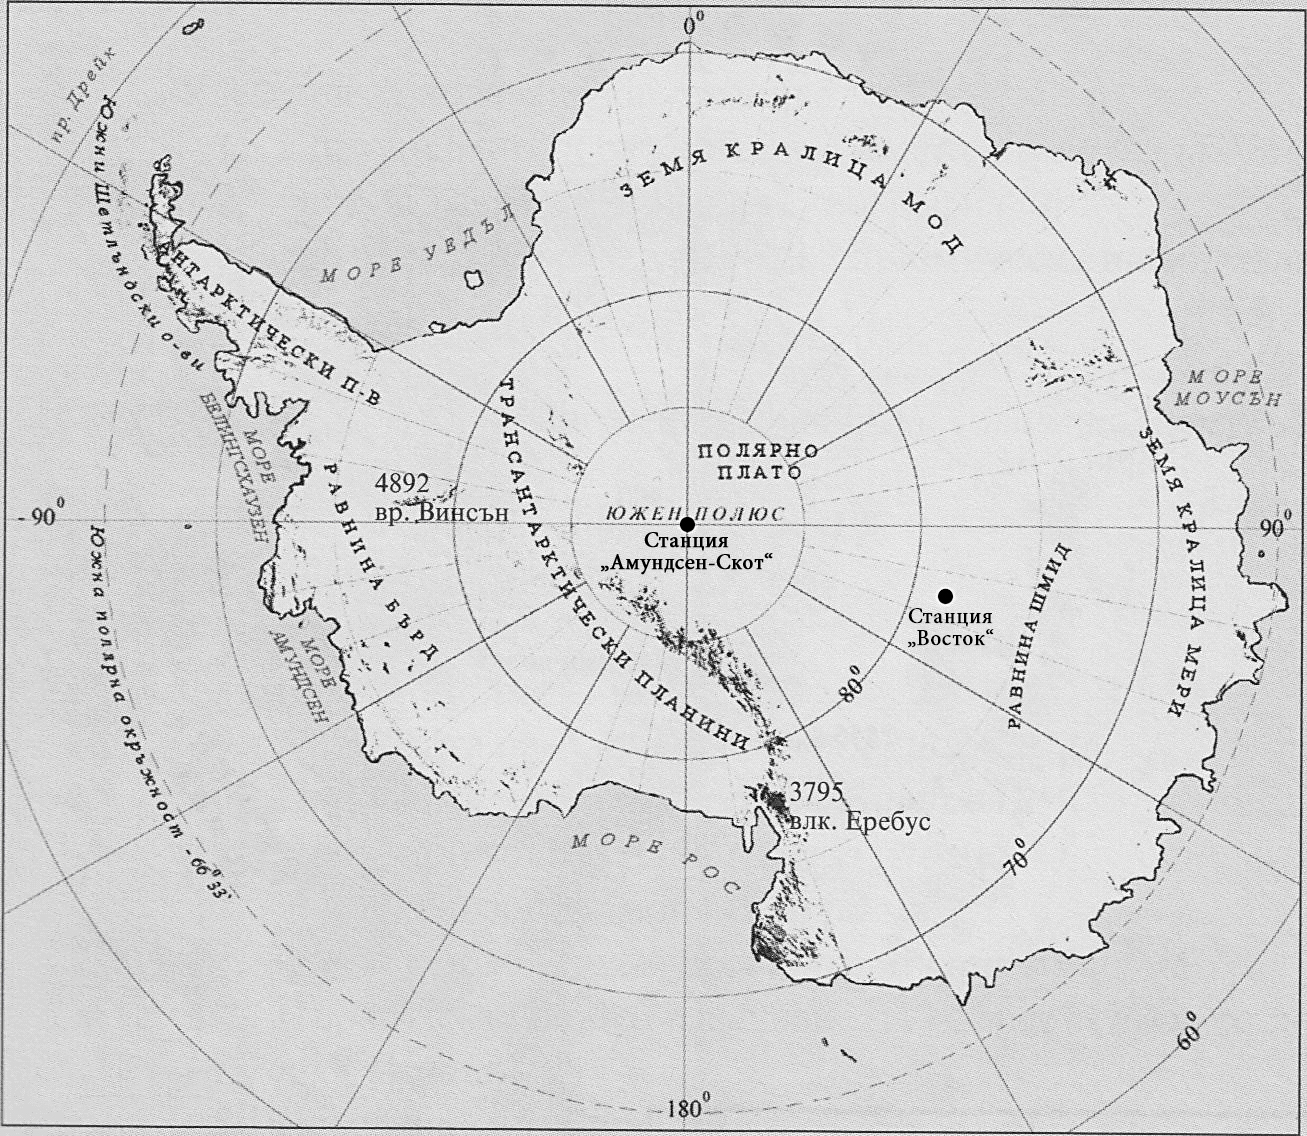 Контурная карта антарктиды 7 класс готовая. Контурная карта Антарктиды 7 класс для печати. Южный полюс Антарктиды на контурной карте. Антарктида контур на карте. Физическая контурная карта Антарктиды.